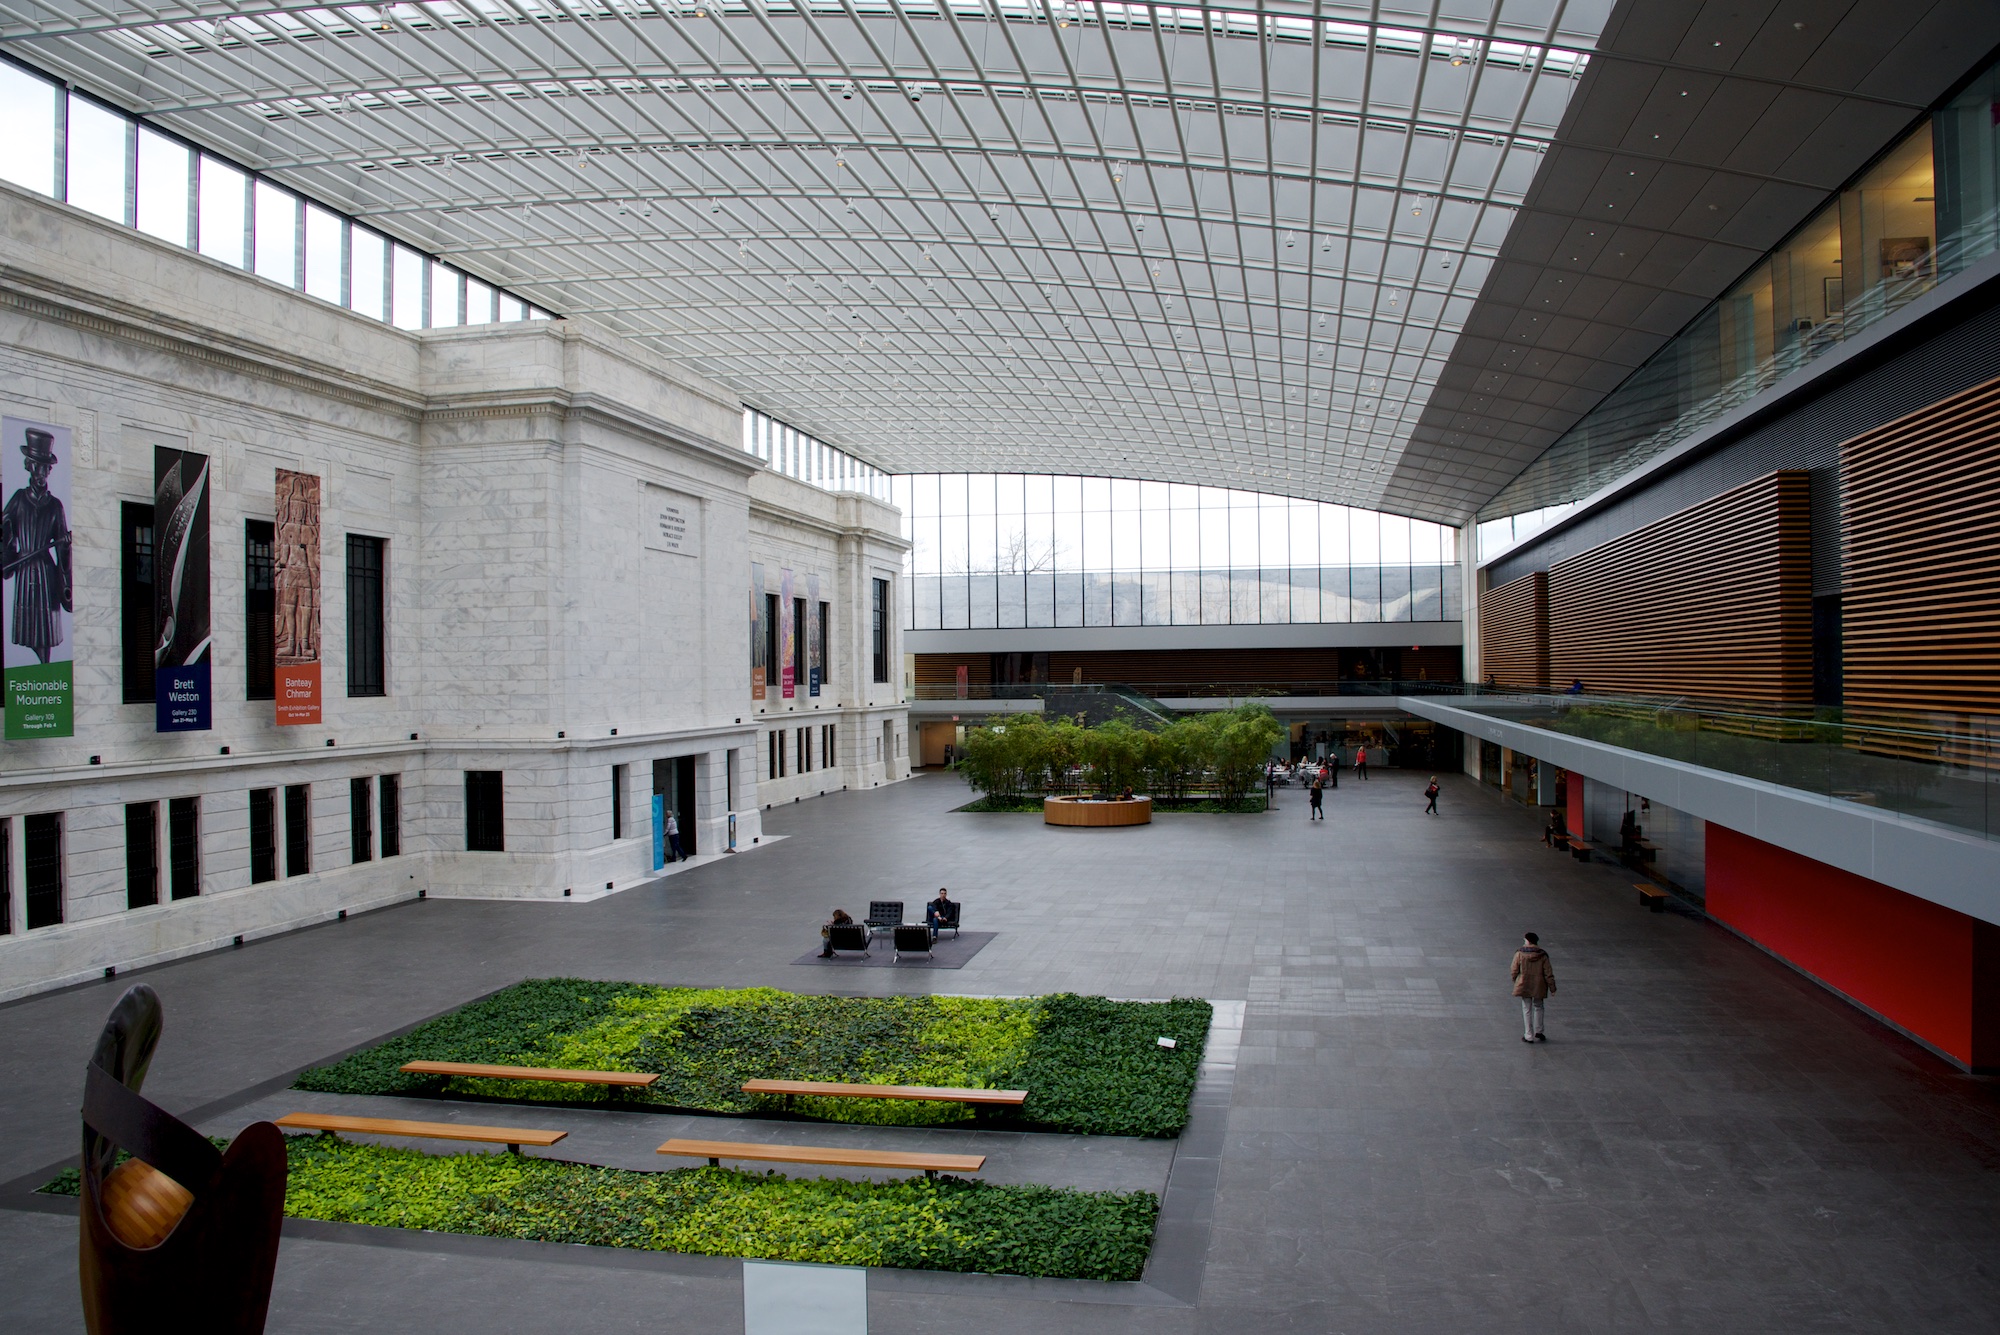 Atrium at Cleveland Museum of Art